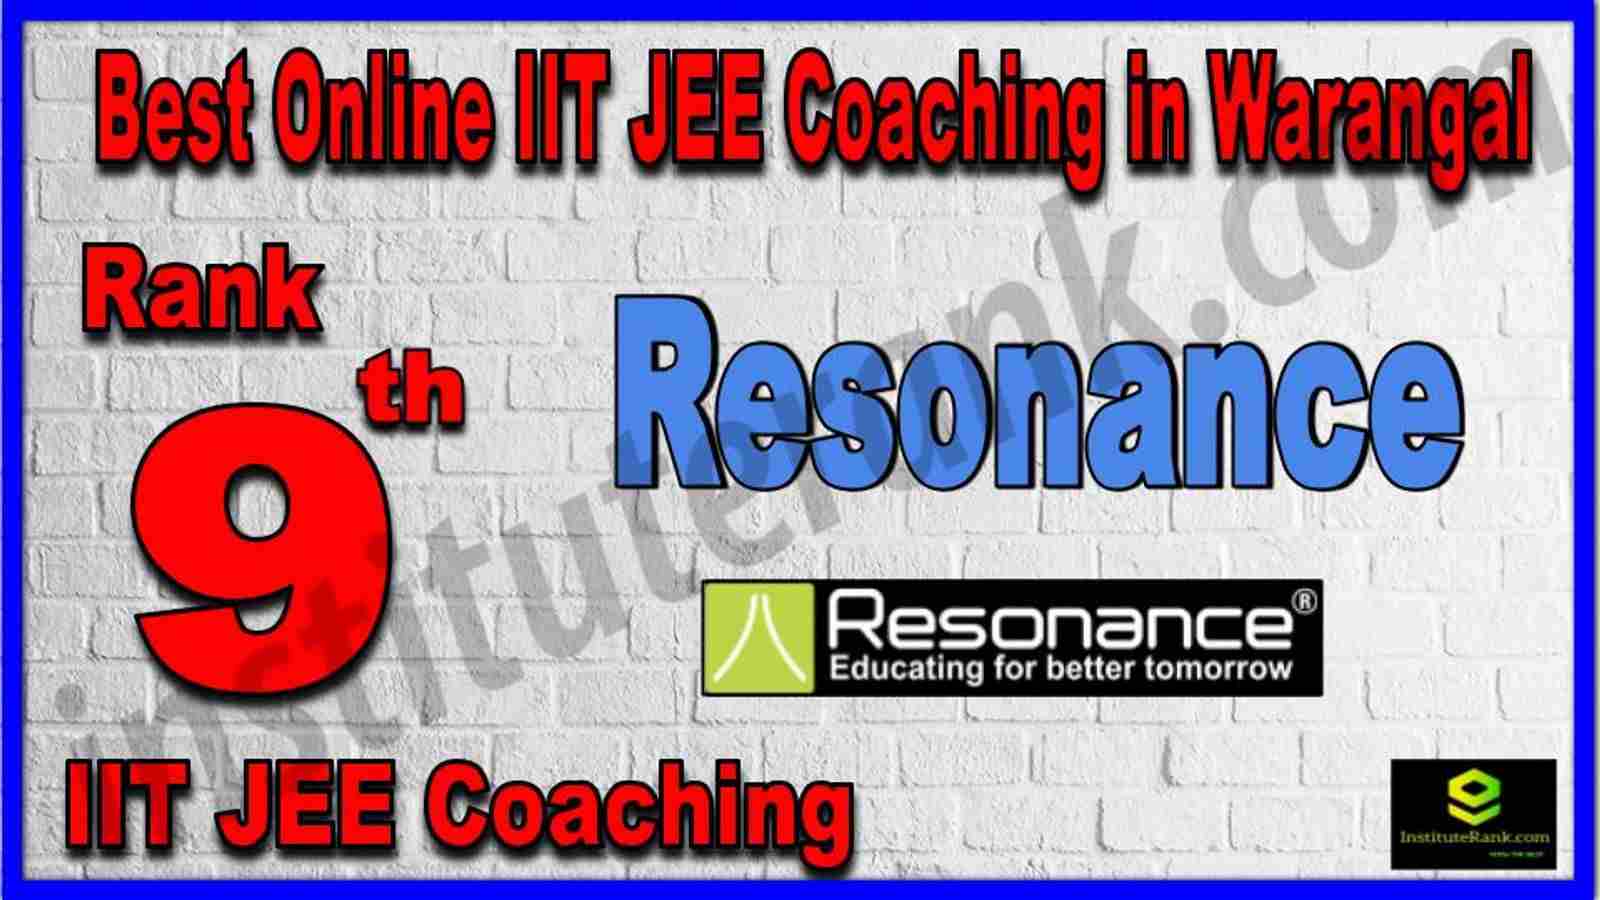 Rank 9th Best Online IIT JEE Coaching in Warangal